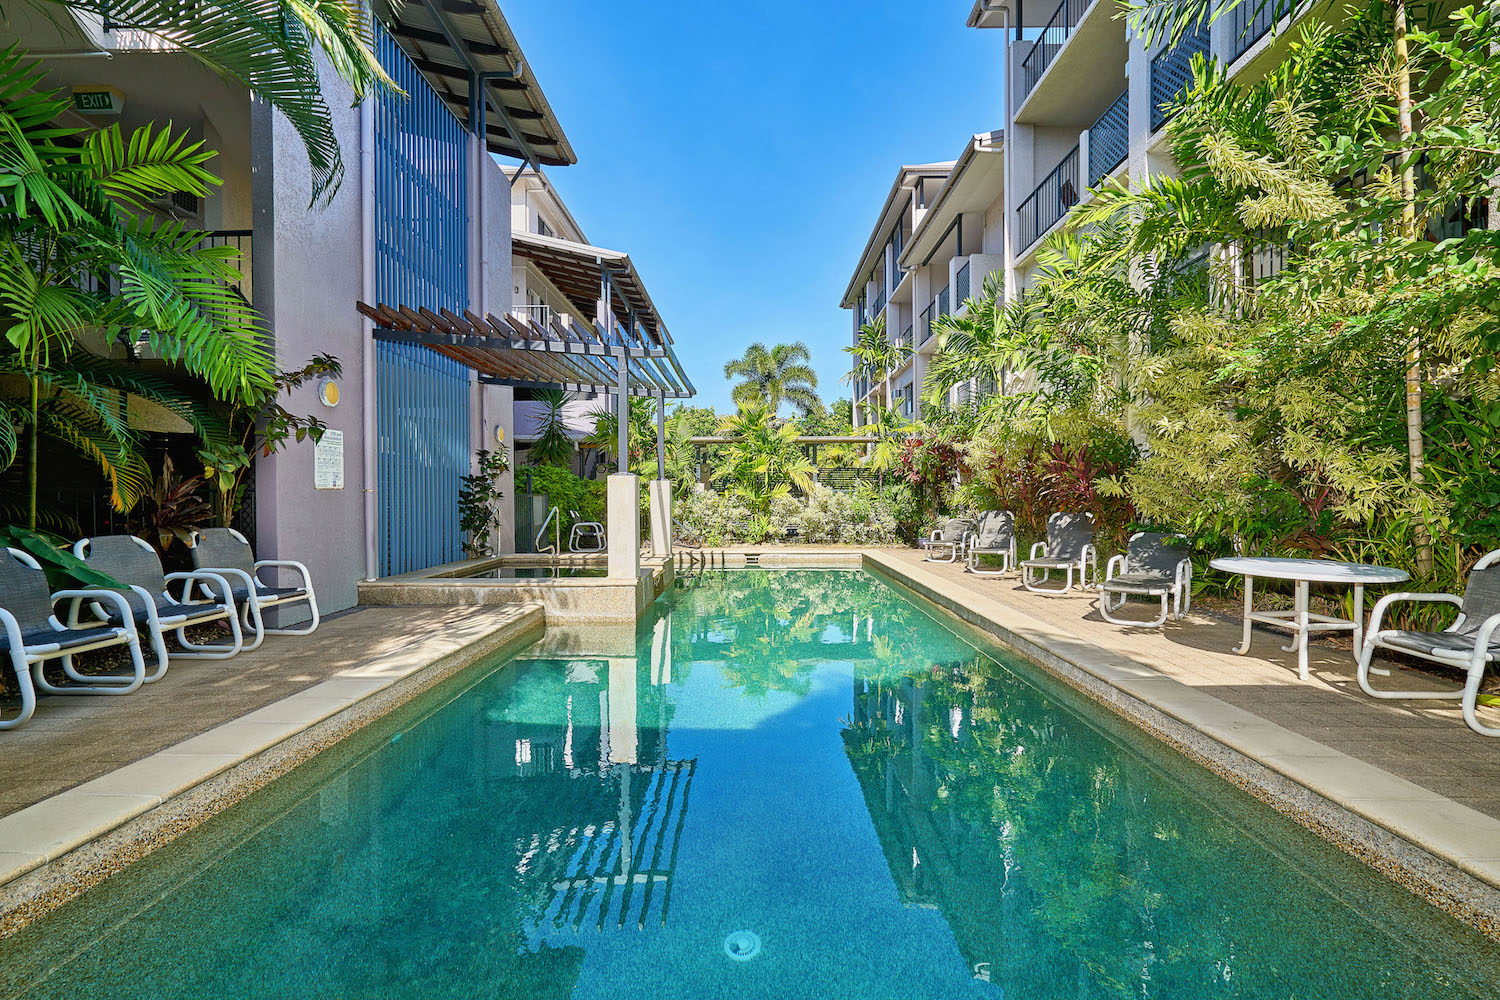 Pool at Cairns City Getaway holiday apartments